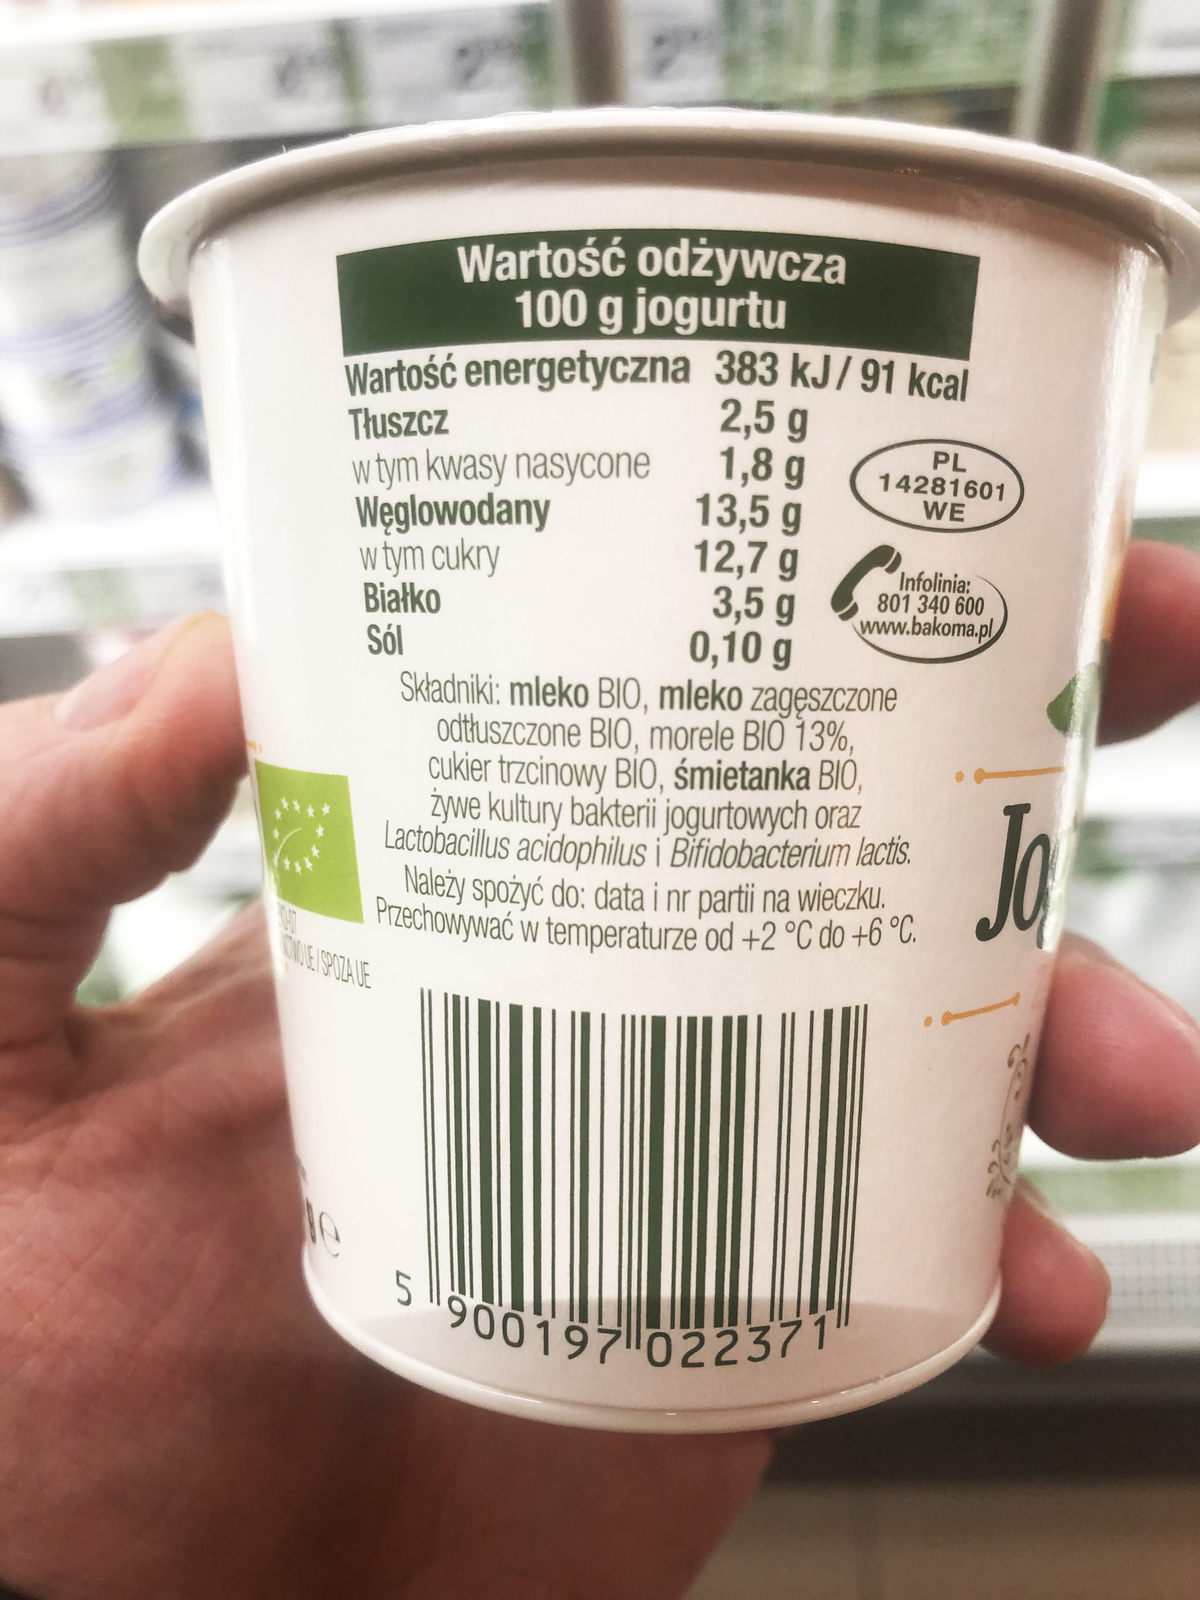 Ilustracja przedstawia etykietę jogurtu. Zawarto na niej następujące informacje: Wartość odżywcza na 100g jogurtu: Wartość energetyczna 383 kJ/ 91 kcal; Tłuszcz 2,5g w tym kwasy nasycone 1,8g; Węglowodany 13,5g w tym cukry 12,7g; Białko 3,5g; Sól 0,10g. Składniki: mleko BIO, mleko zagęszczone odtłuszczone BIO, morele BIO 13%, cukier trzcinowy BIO, śmietanka BIO, żywe kultury bakterii jogurtowych oraz Lactobacillus acisophilus i Bifidobacterium lactis. 